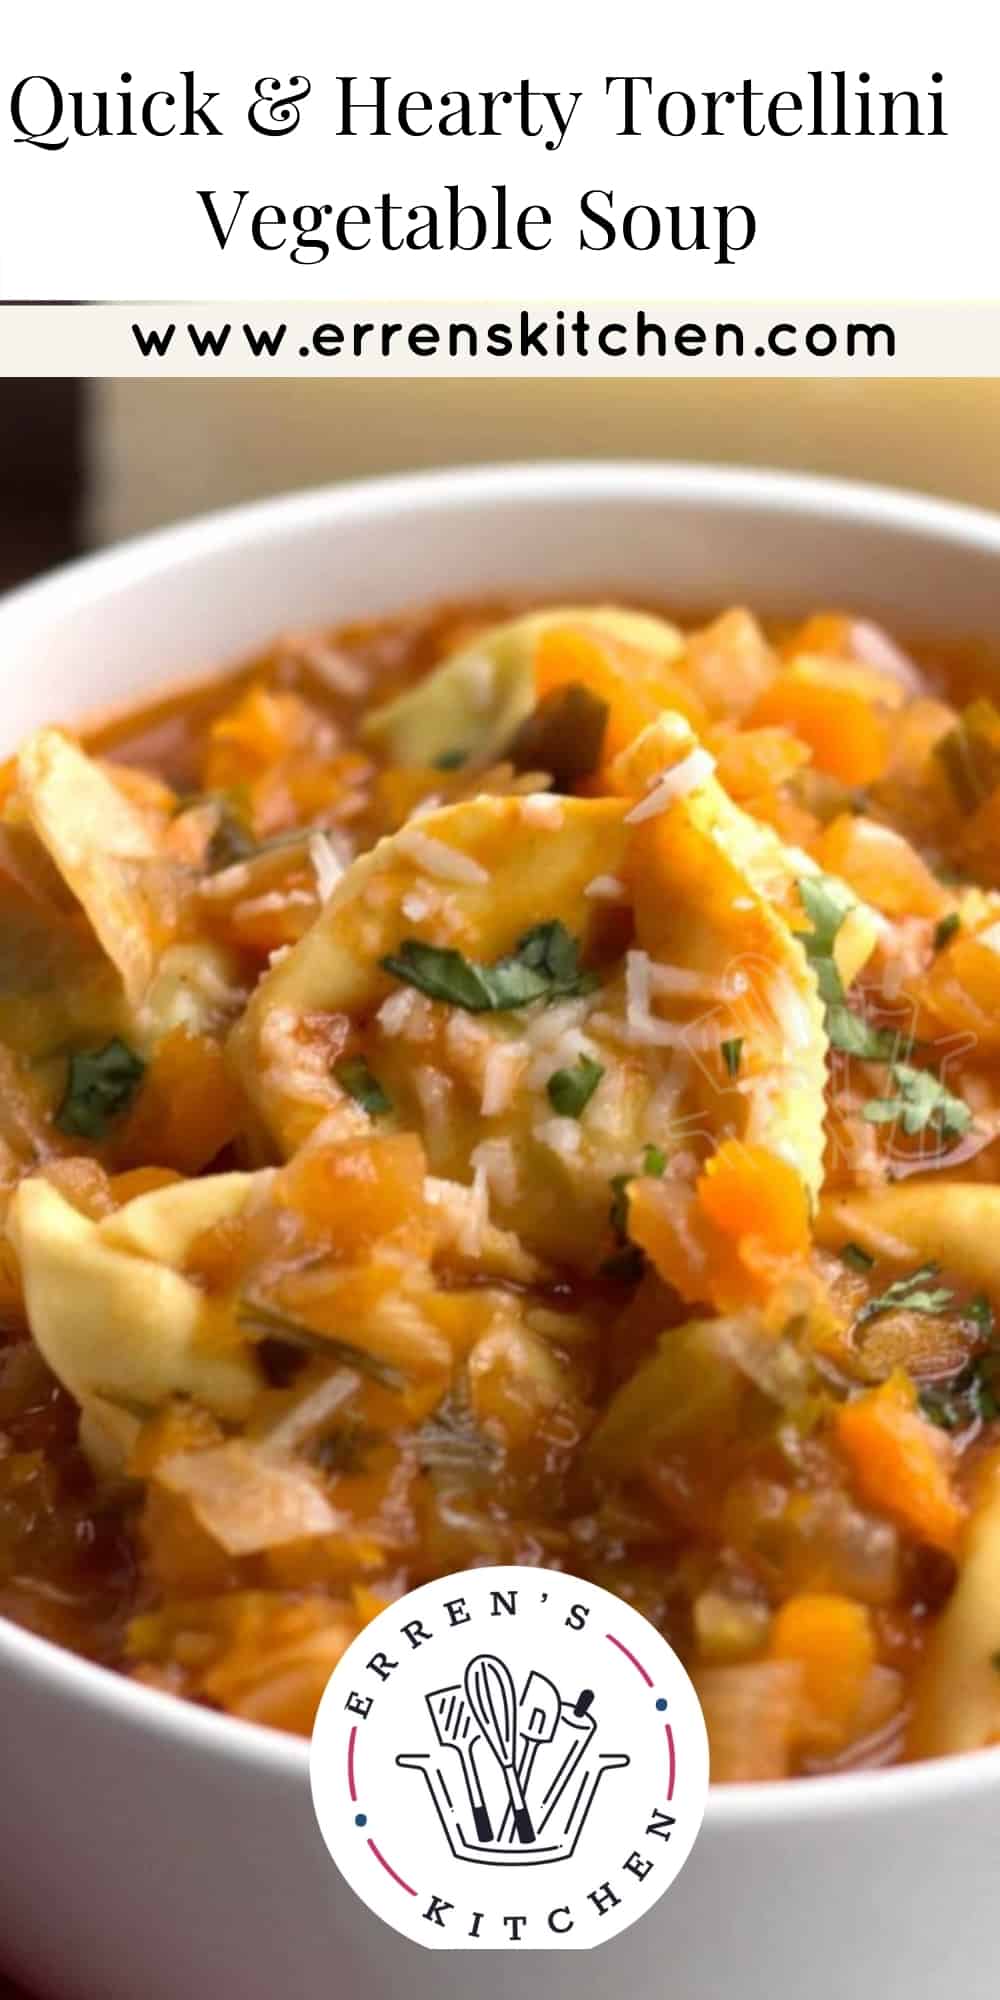 Quick & Hearty Tortellini Vegetable Soup - Erren's Kitchen